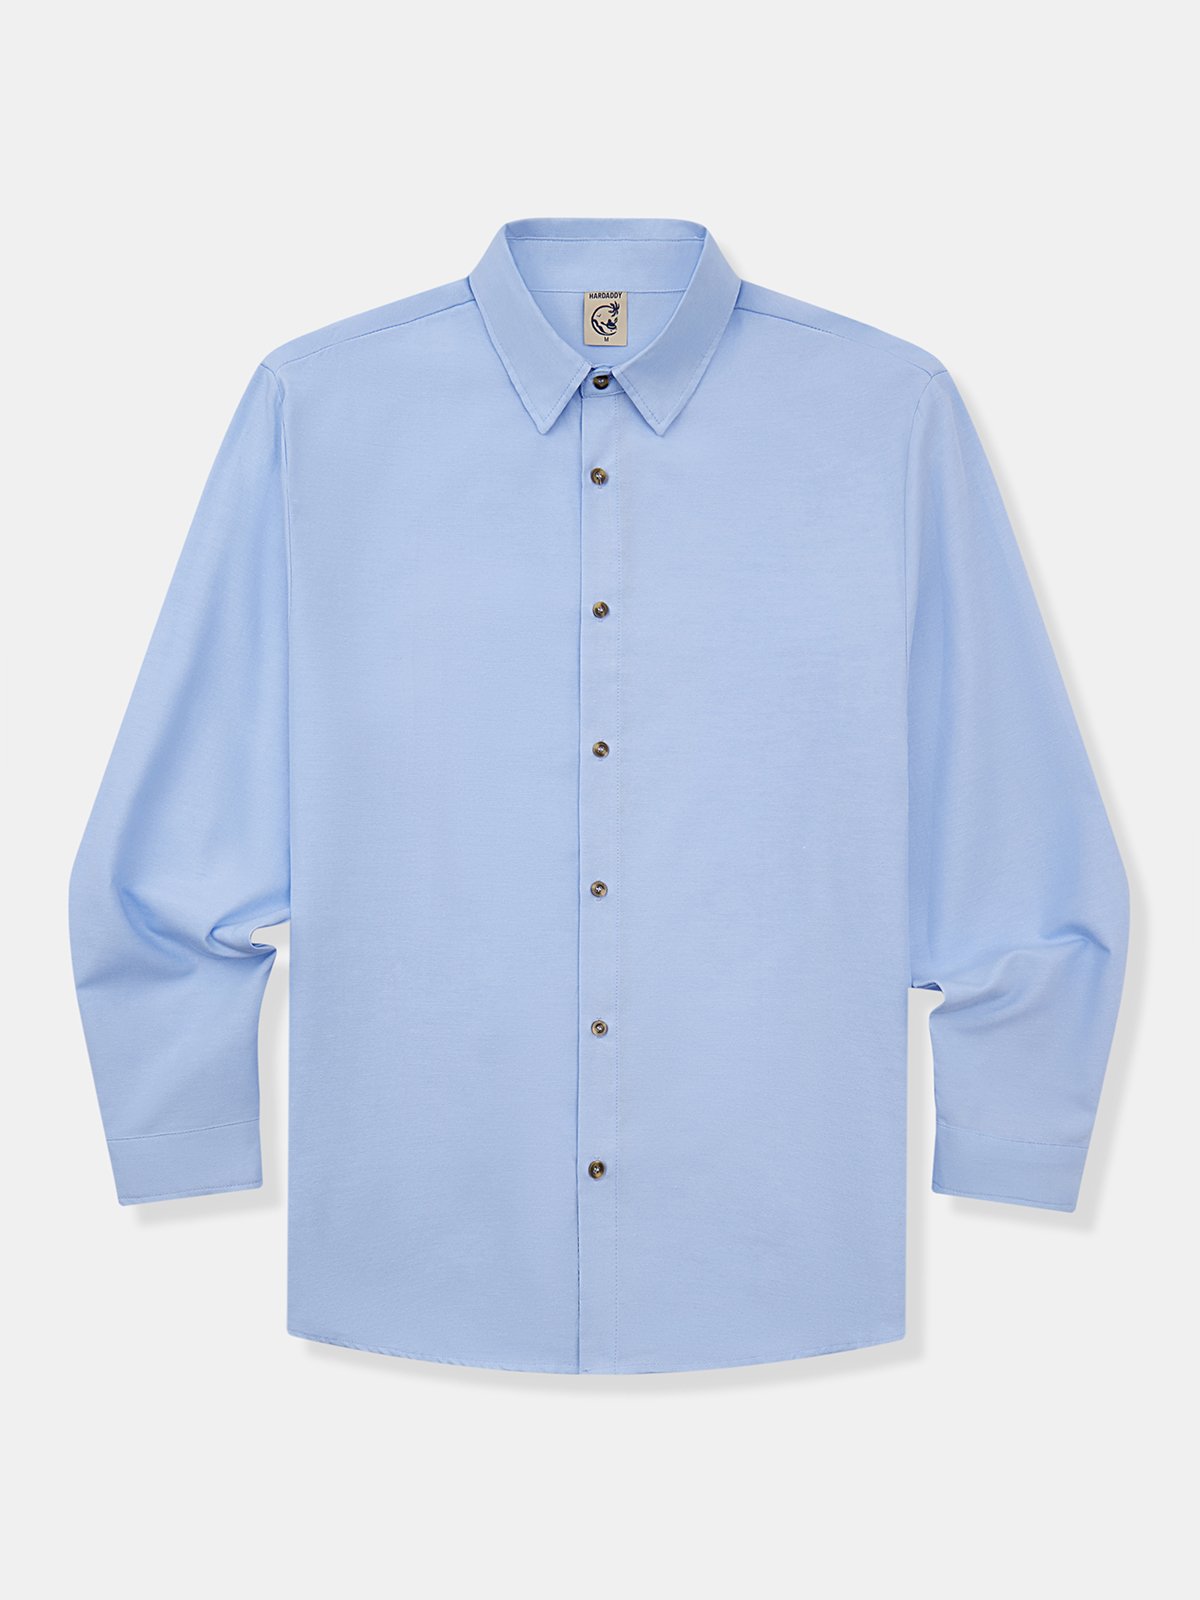 Hardaddy® Cotton Plain Paneled Long Sleeve Shirt